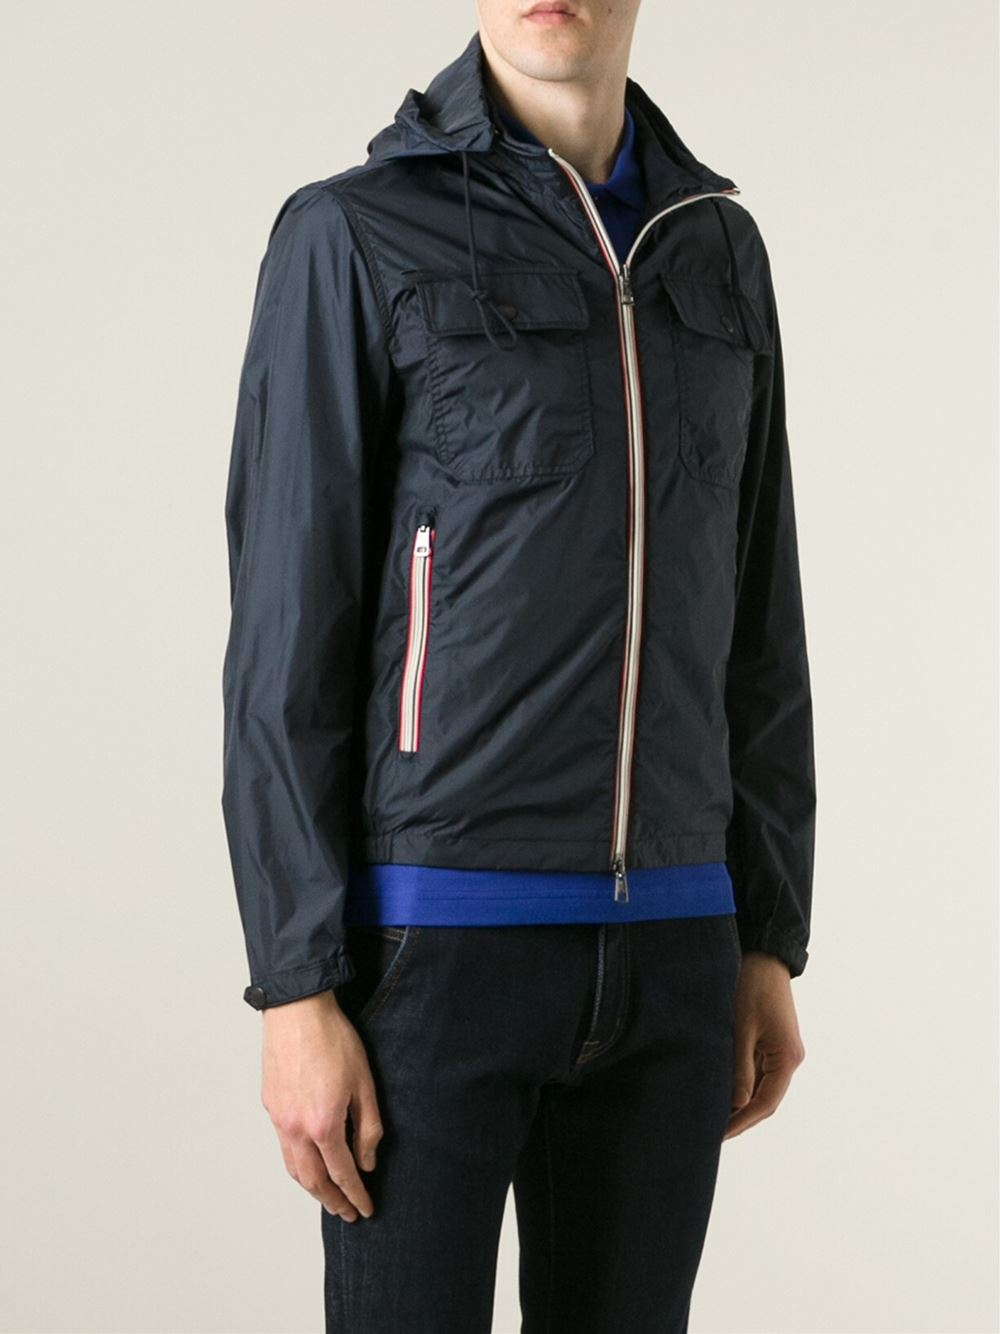 Moncler 'Lyon' Windbreaker Jacket in Blue for Men - Lyst